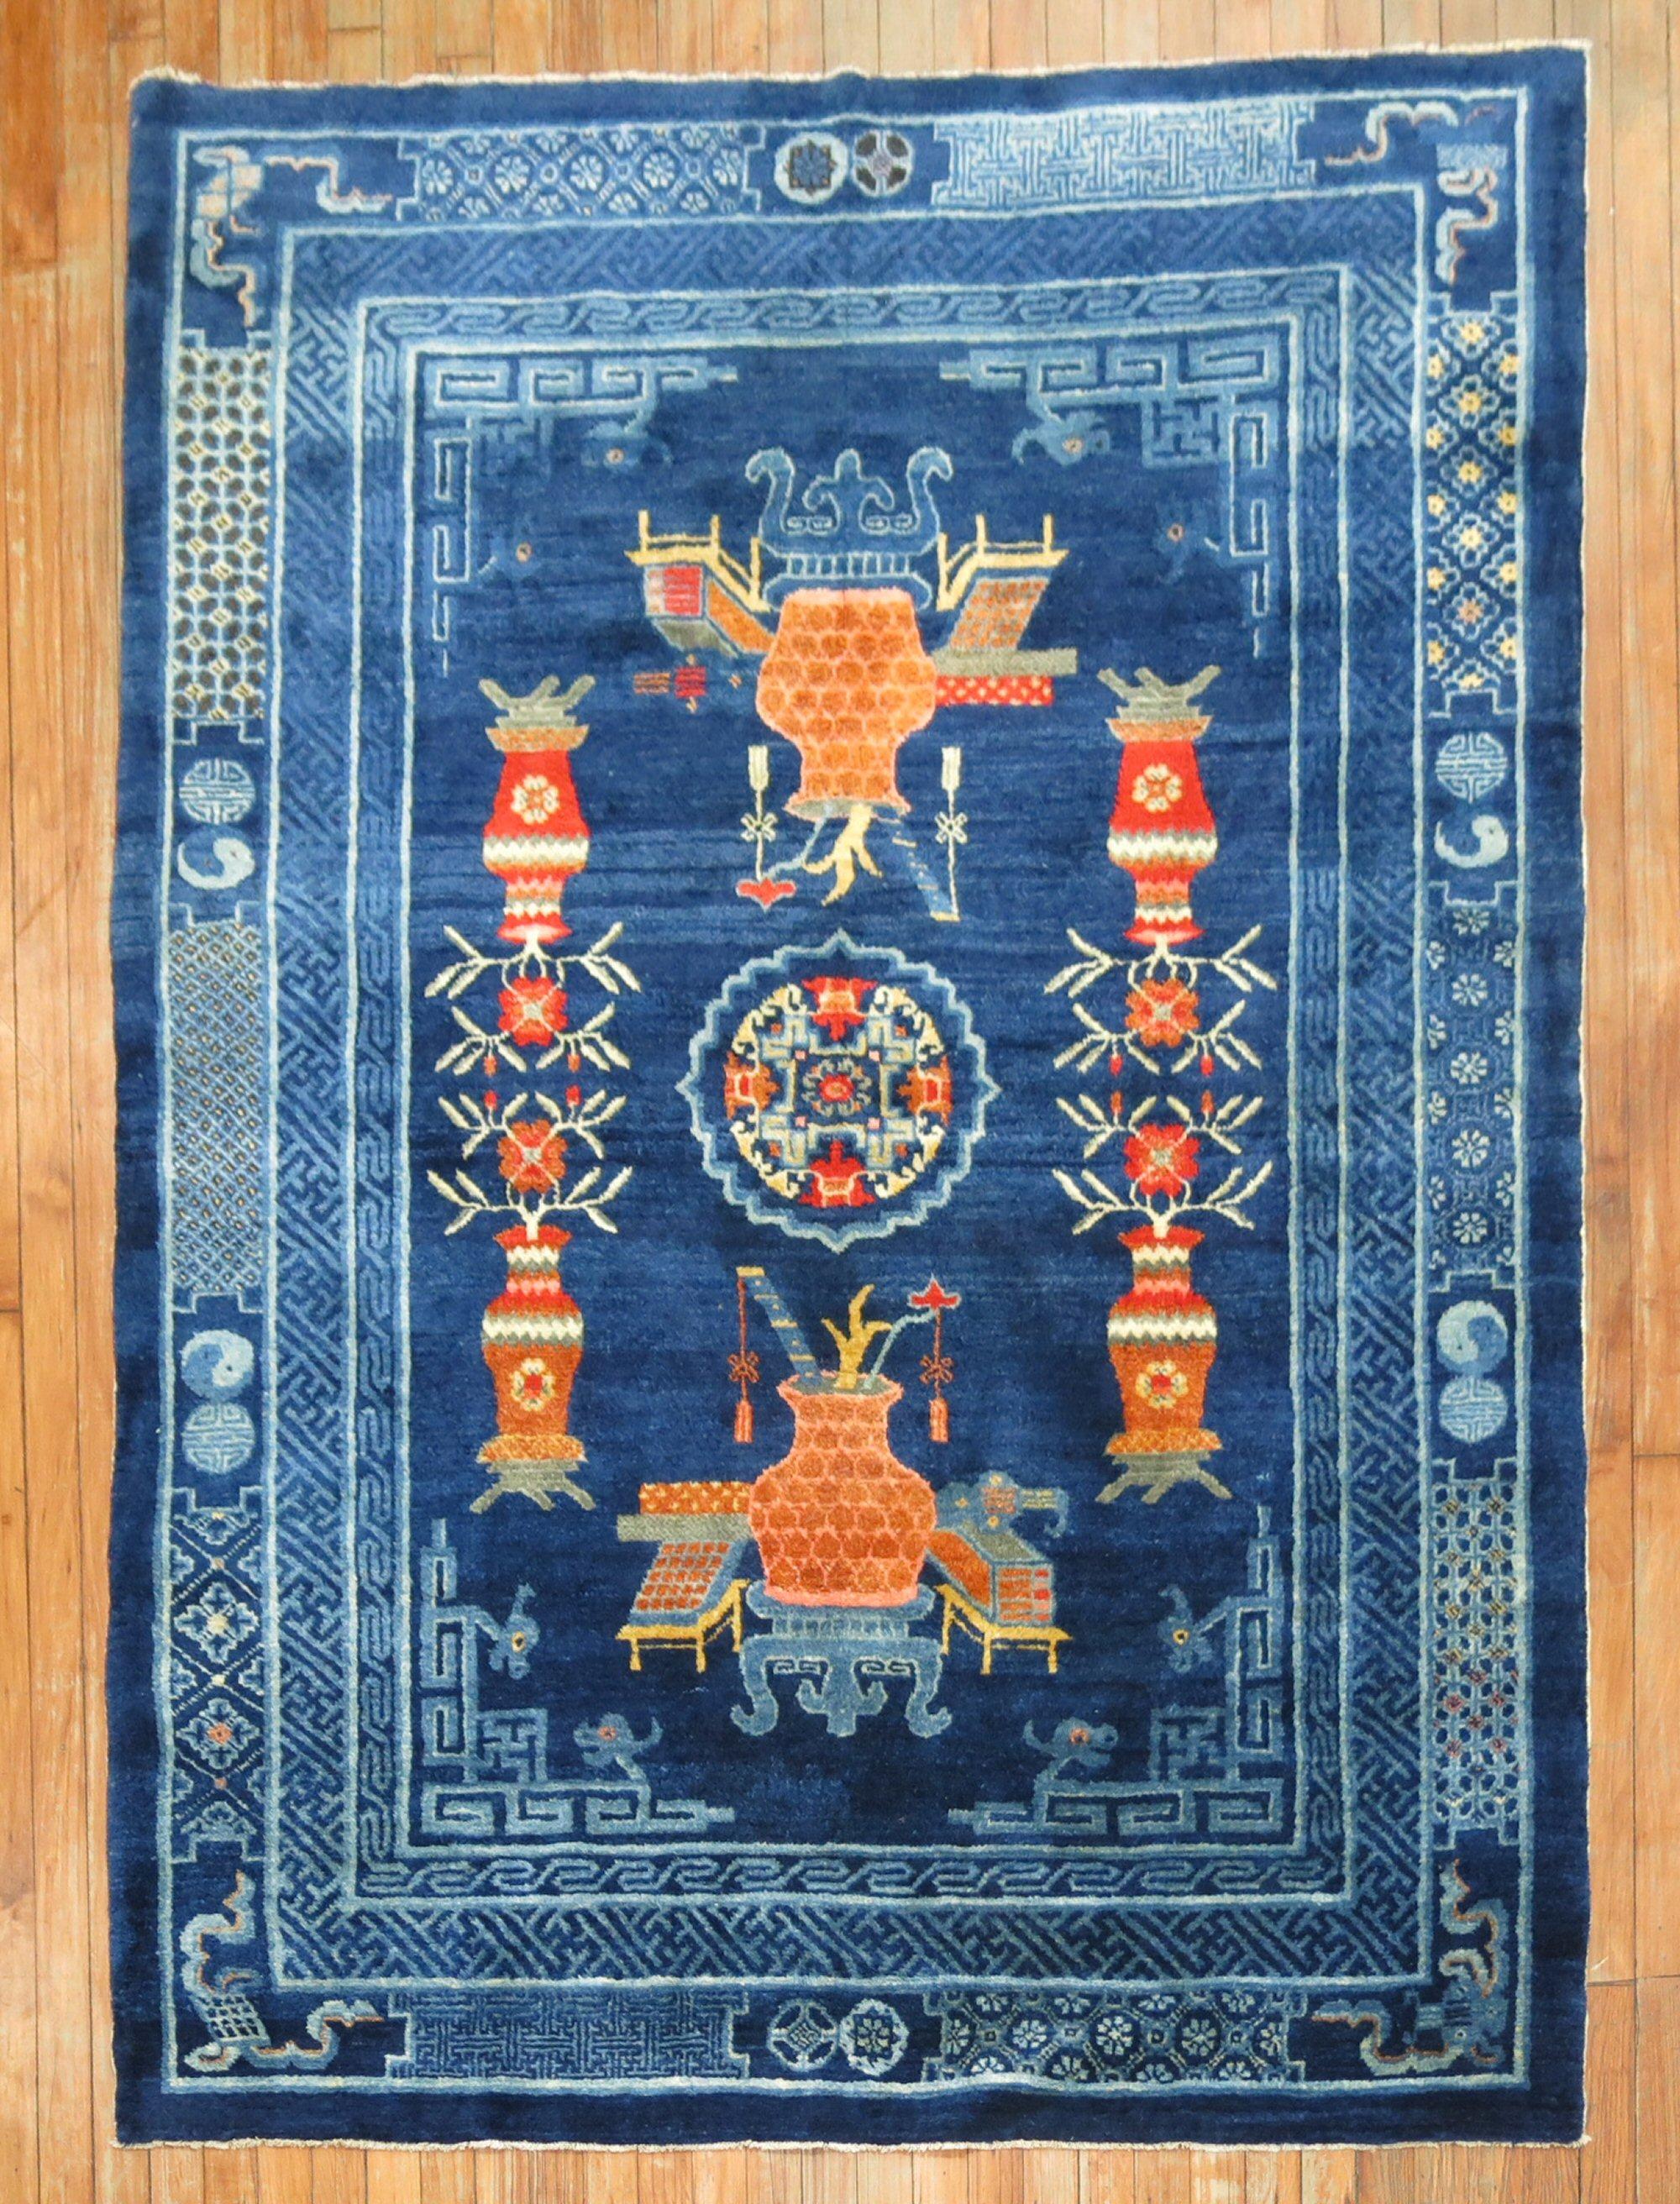 Chinesischer Vollflor-Teppich in überwiegend Blau mit Vasenmuster in Orange und Koralle aus dem 2. Quartal des 20. Ein Gesprächsstoff.

Maße: 5'' x 6'8''.